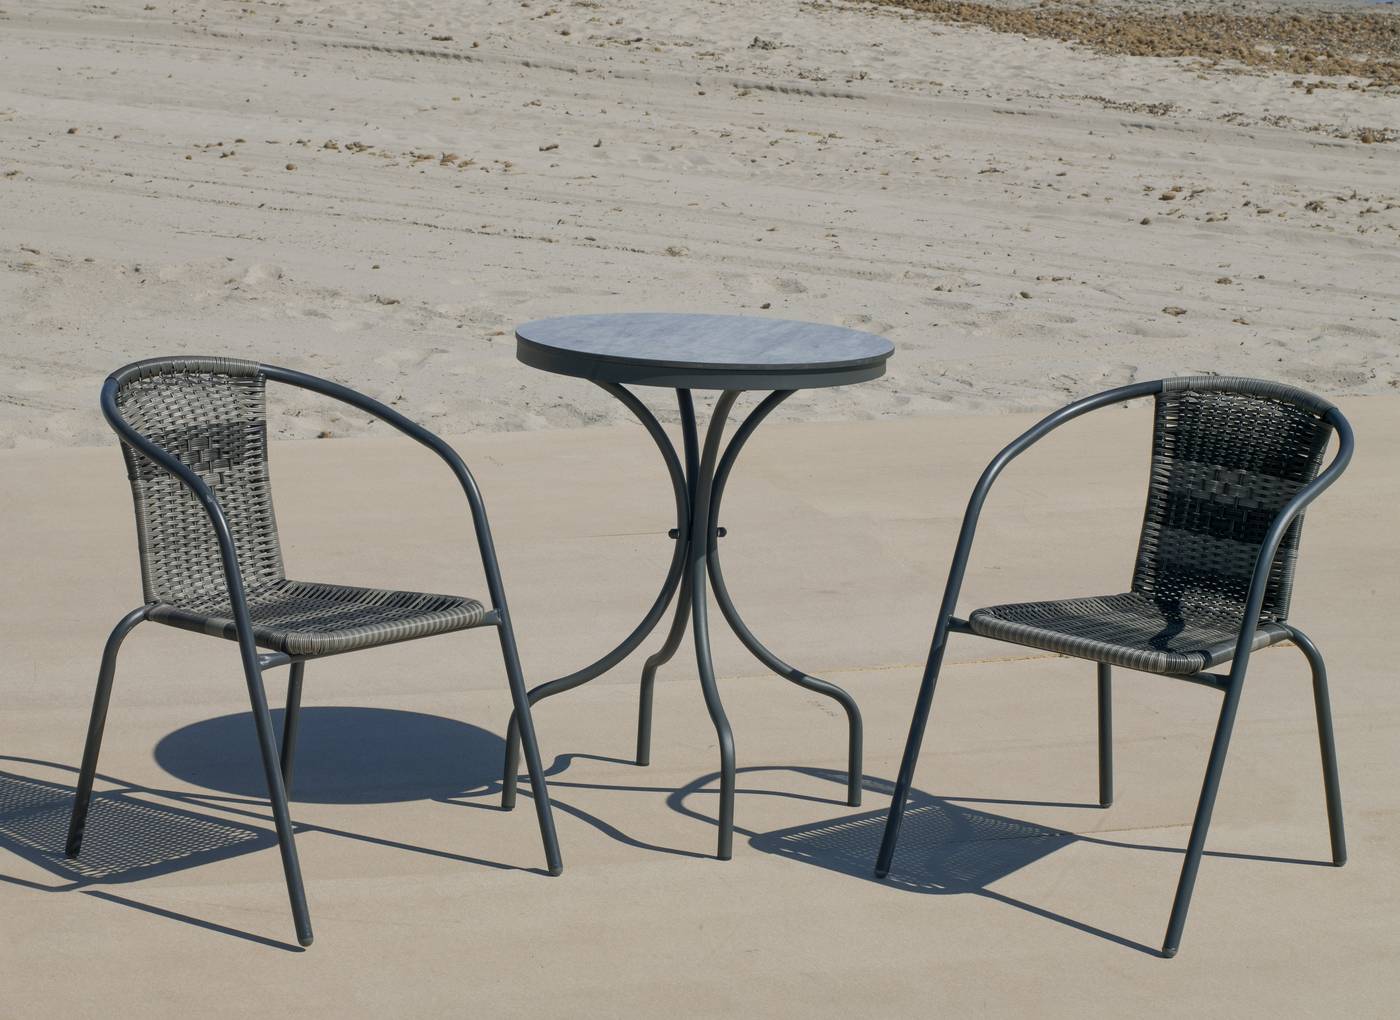 Conjunto color antracita: Mesa redonda de aluminio con tablero HPL de 60 cm + 2 sillones de acero y wicker.